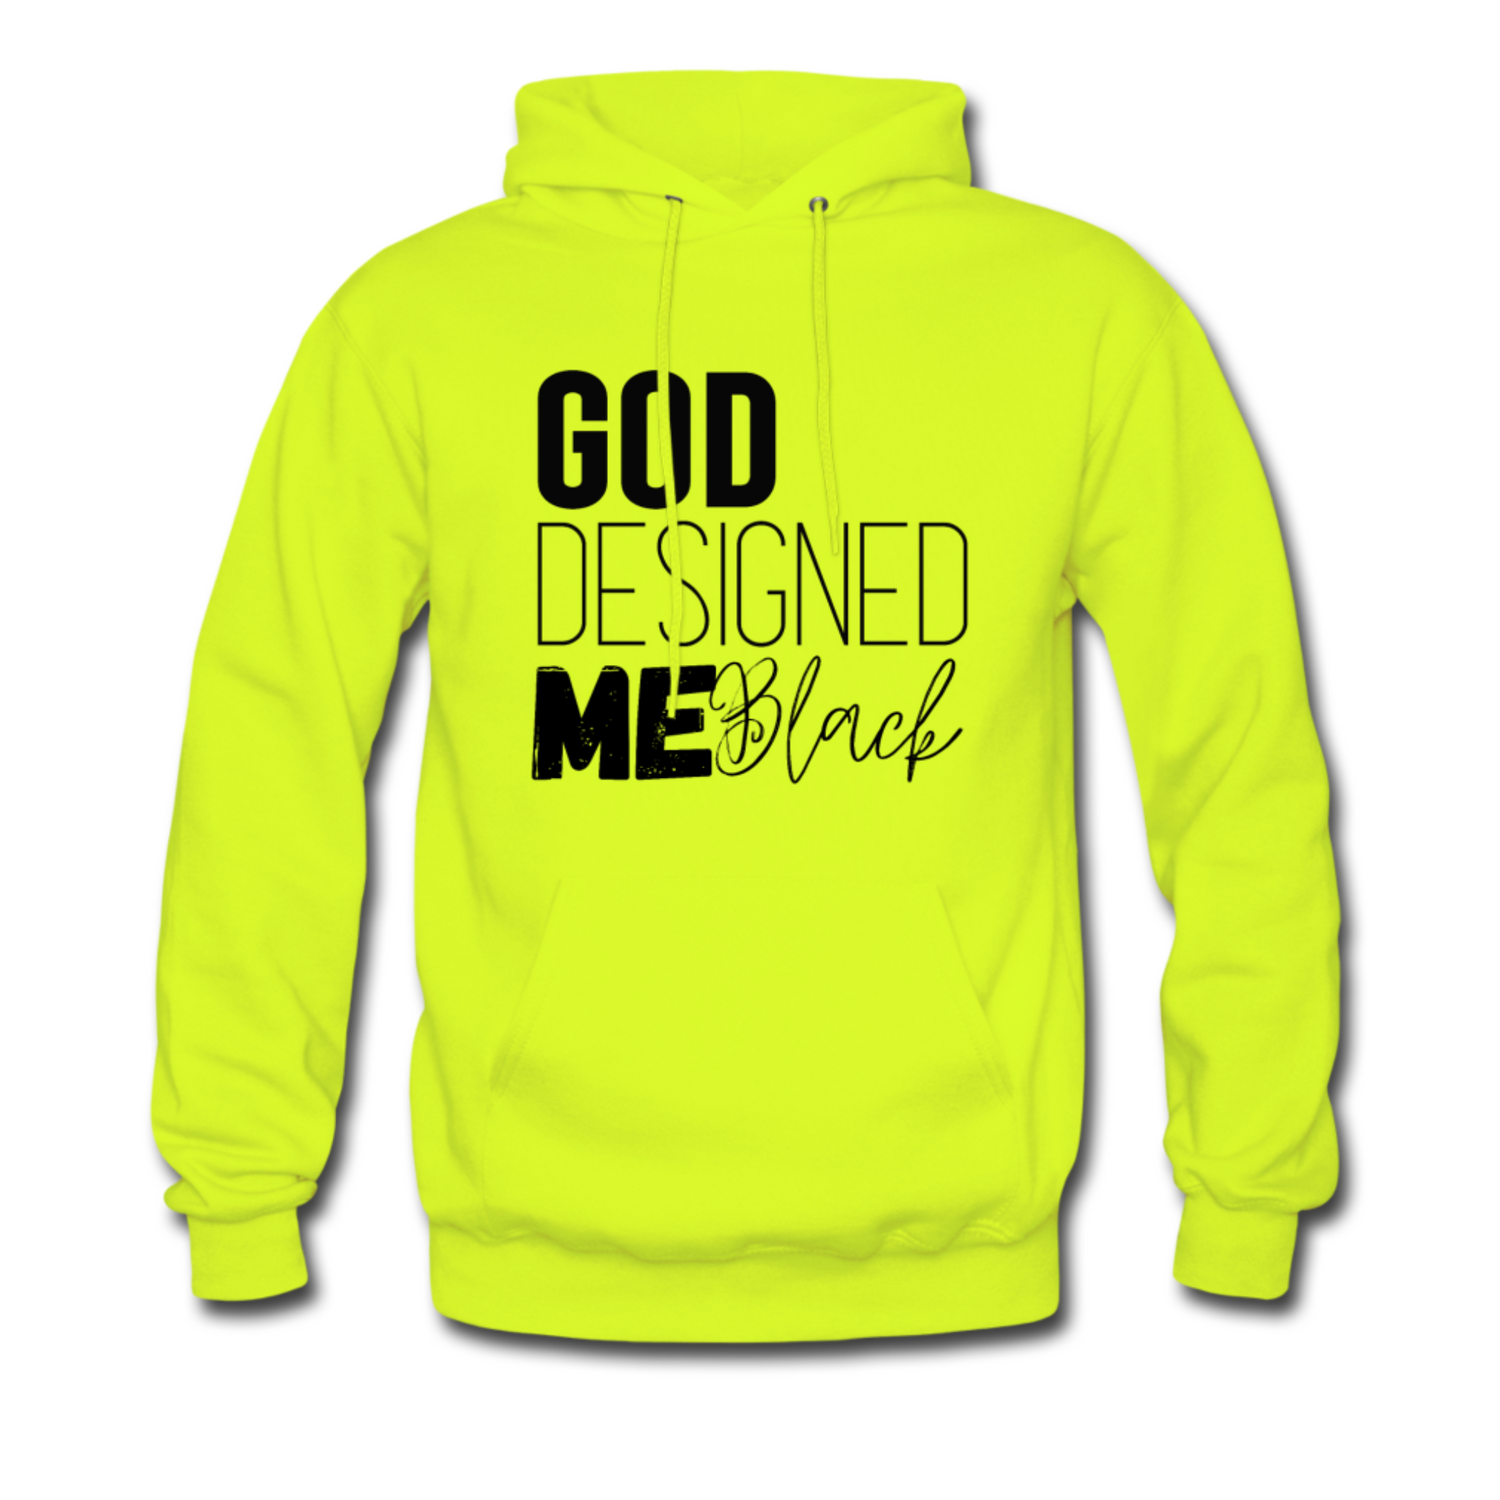 God Designed Me Black